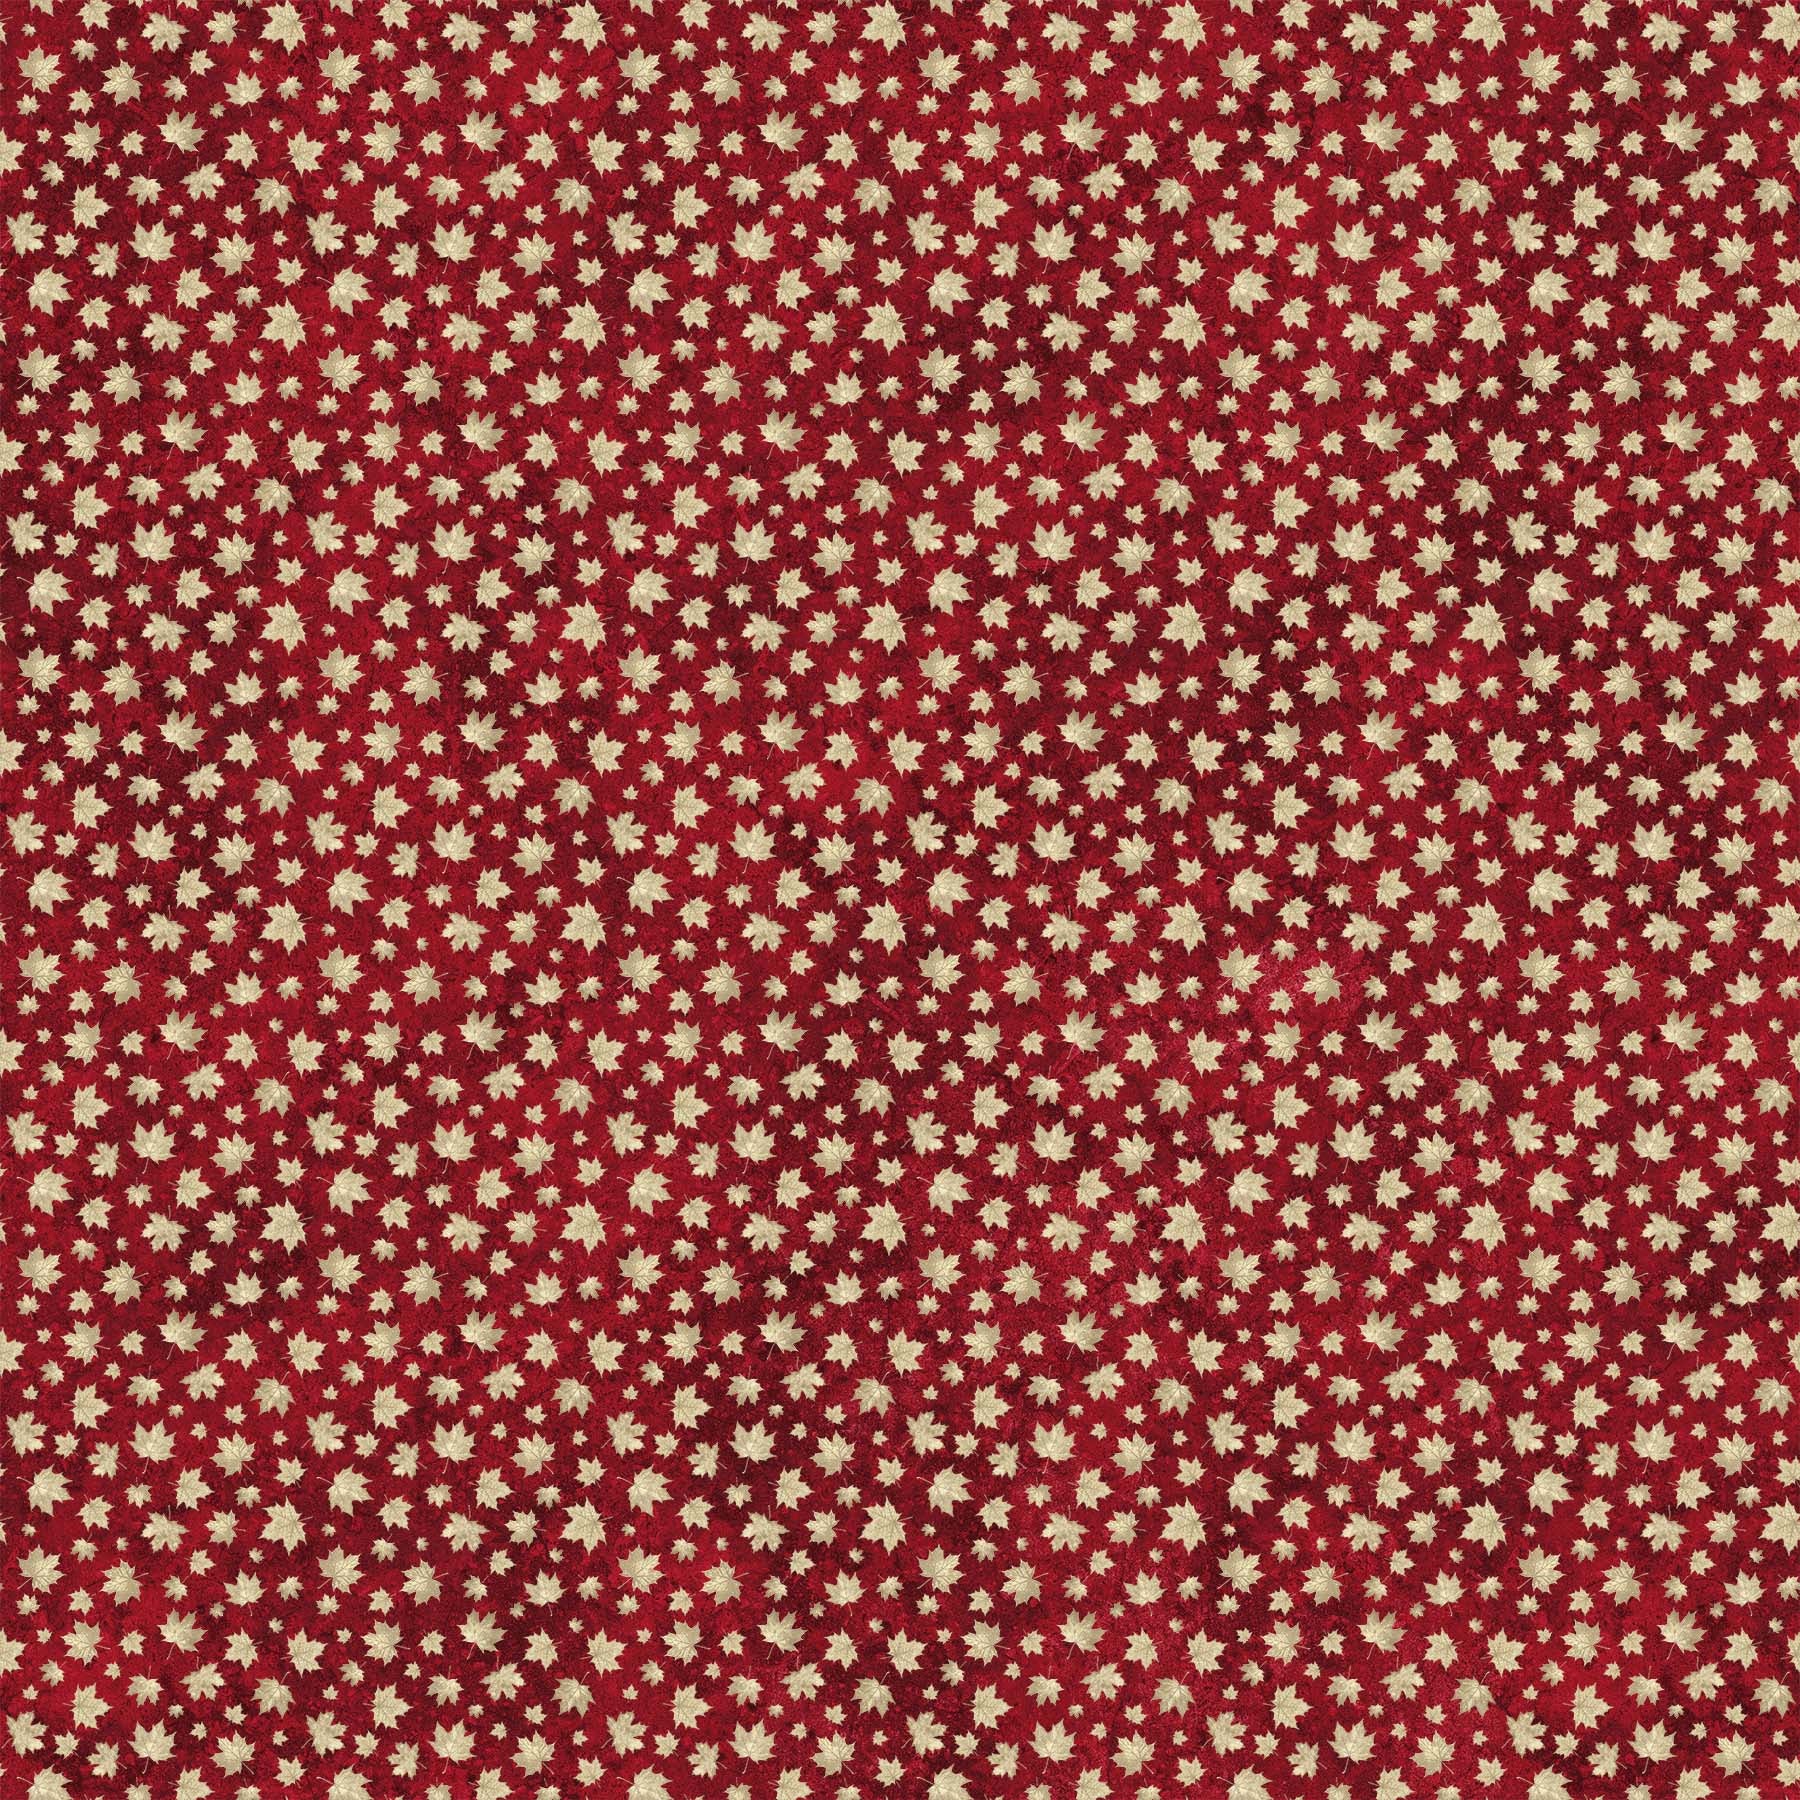 Fabric, Oh Canada, Red Beige, Mini Leaf 24270-24